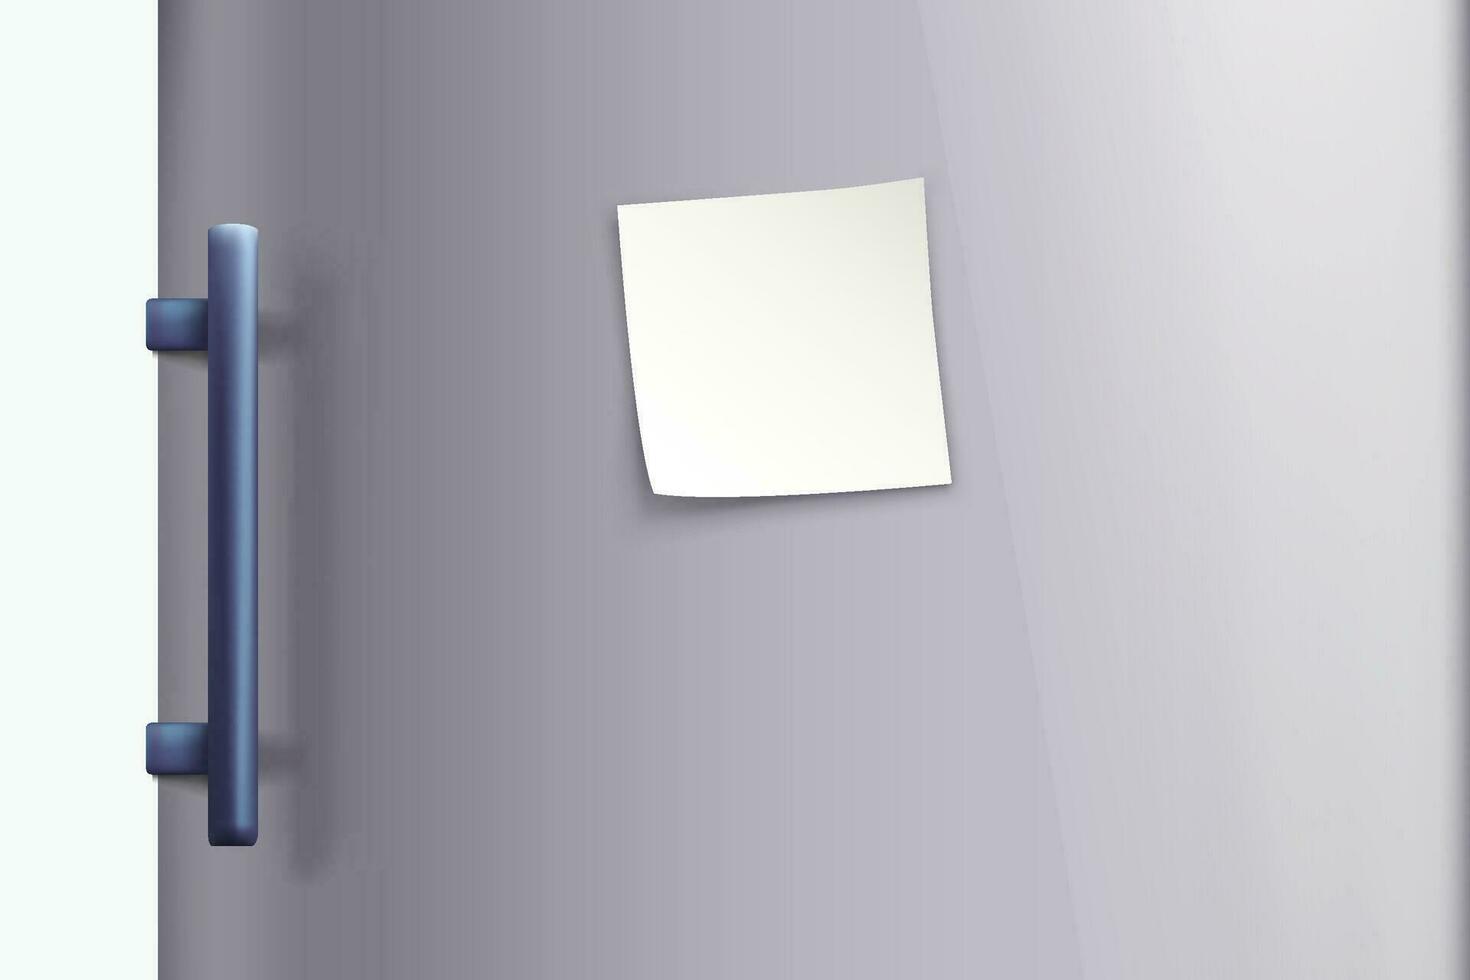 steel fridge door with note vector